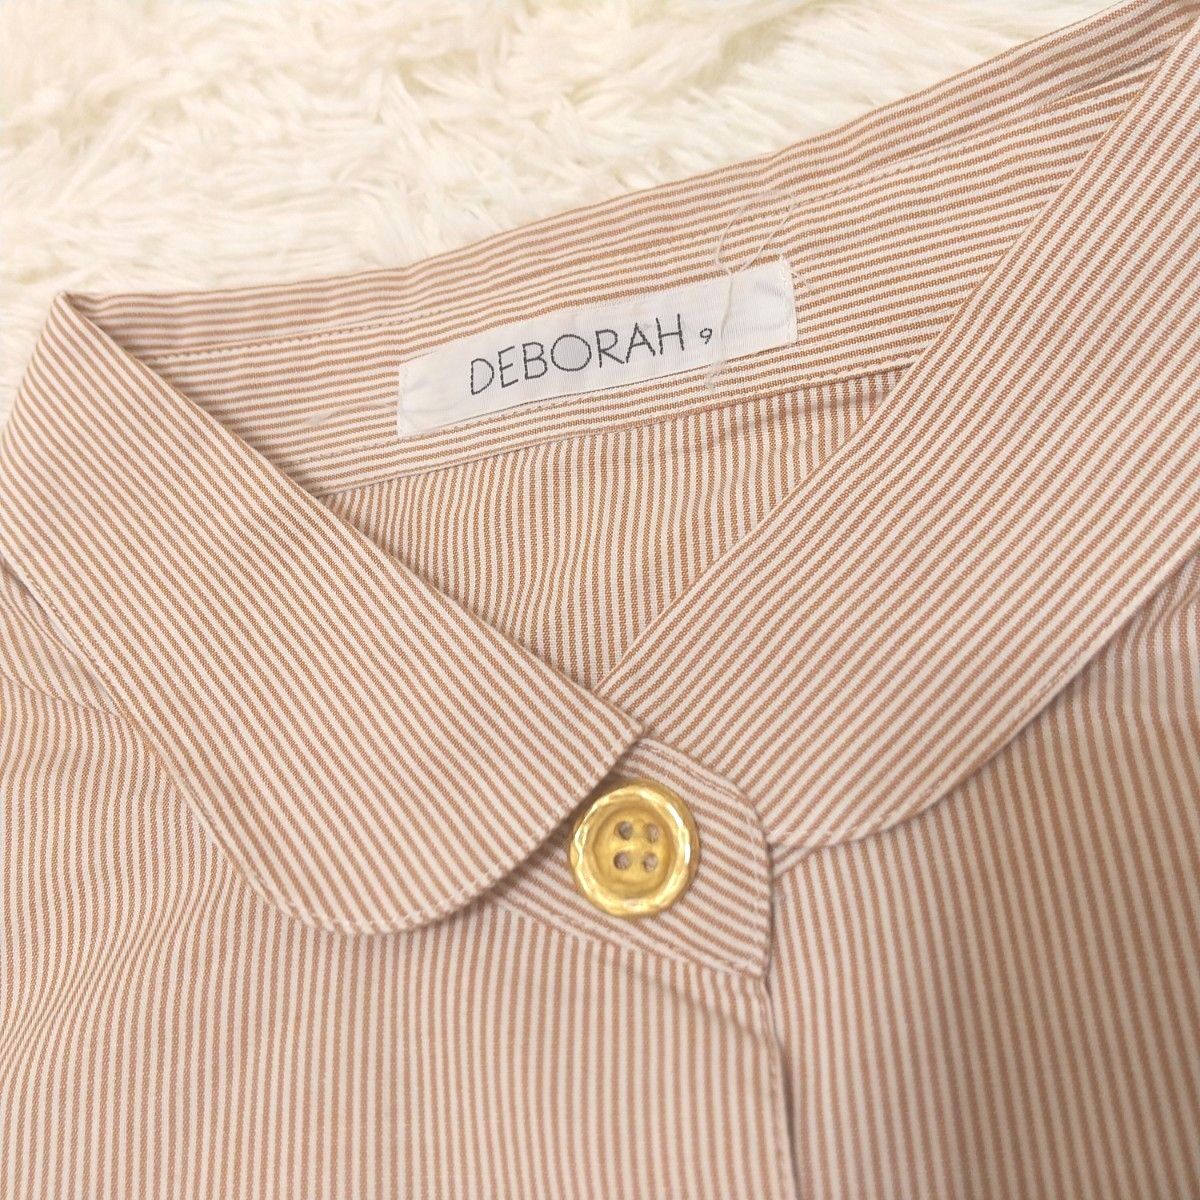 DEBORAH  デボラ  リマージュライカ  シャツ  ストライプ柄  刺繍  くま  ベア  コットン  金ボタン  日本製